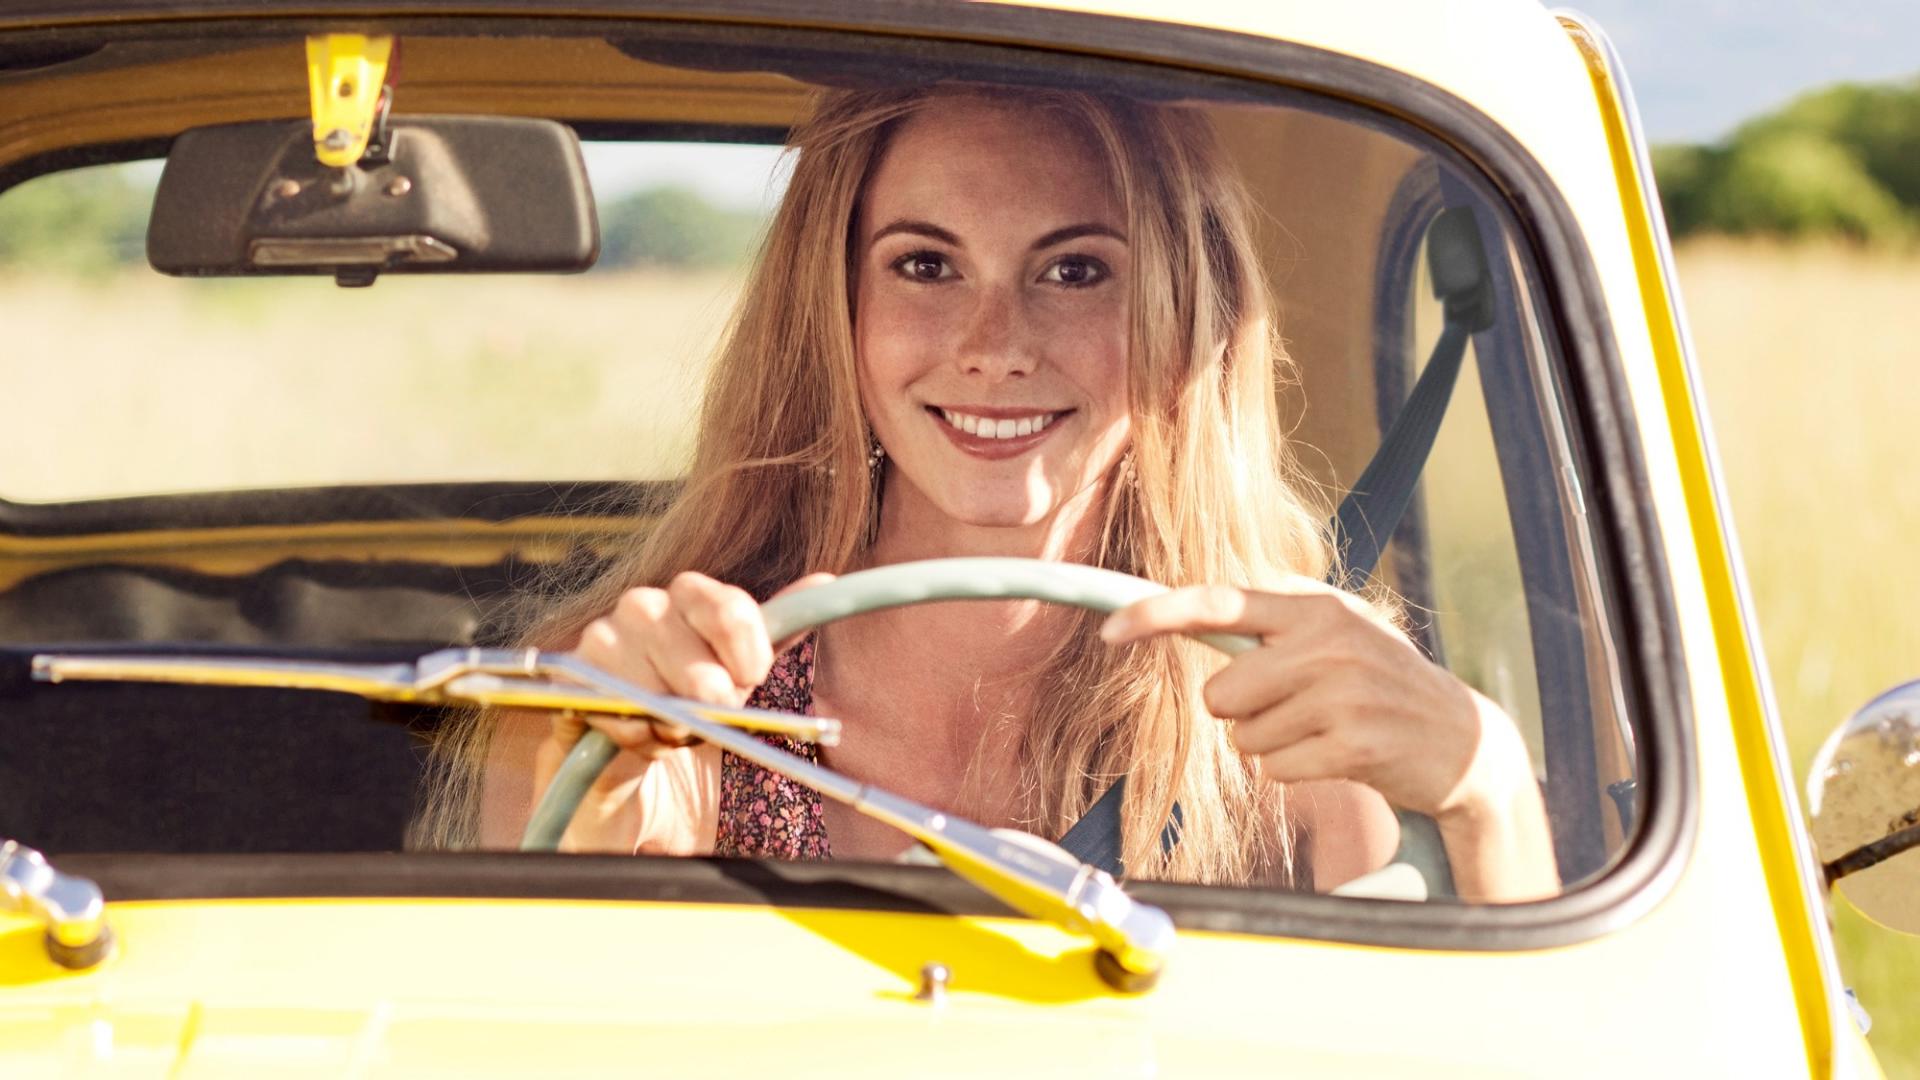 Eine blonde Frau sitzt hinterm Lenkrad in einem gelben Auto und lächelt.